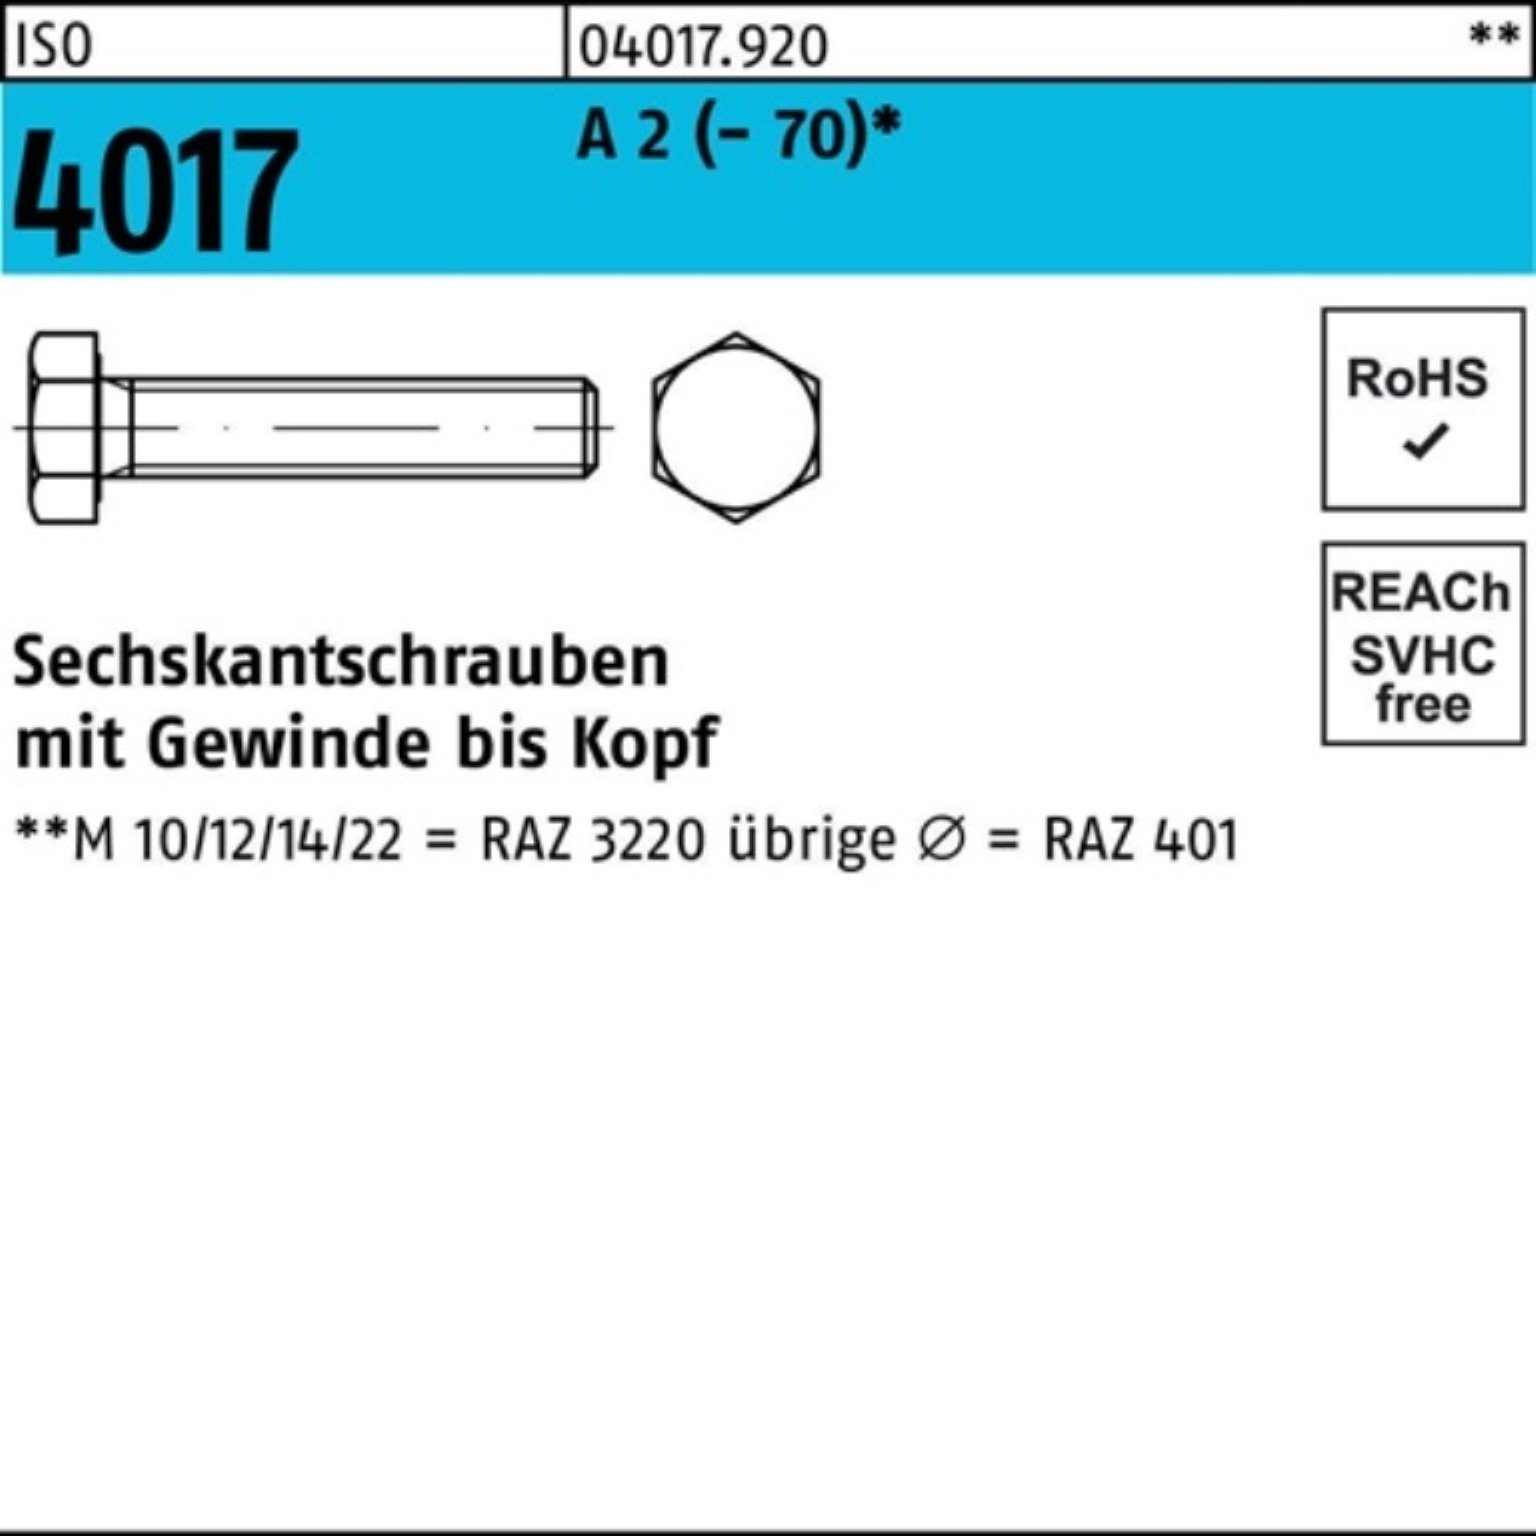 Bufab Sechskantschraube 200er Pack Sechskantschraube ISO 4017 VG M6x 25 A 2 (70) 200 Stück